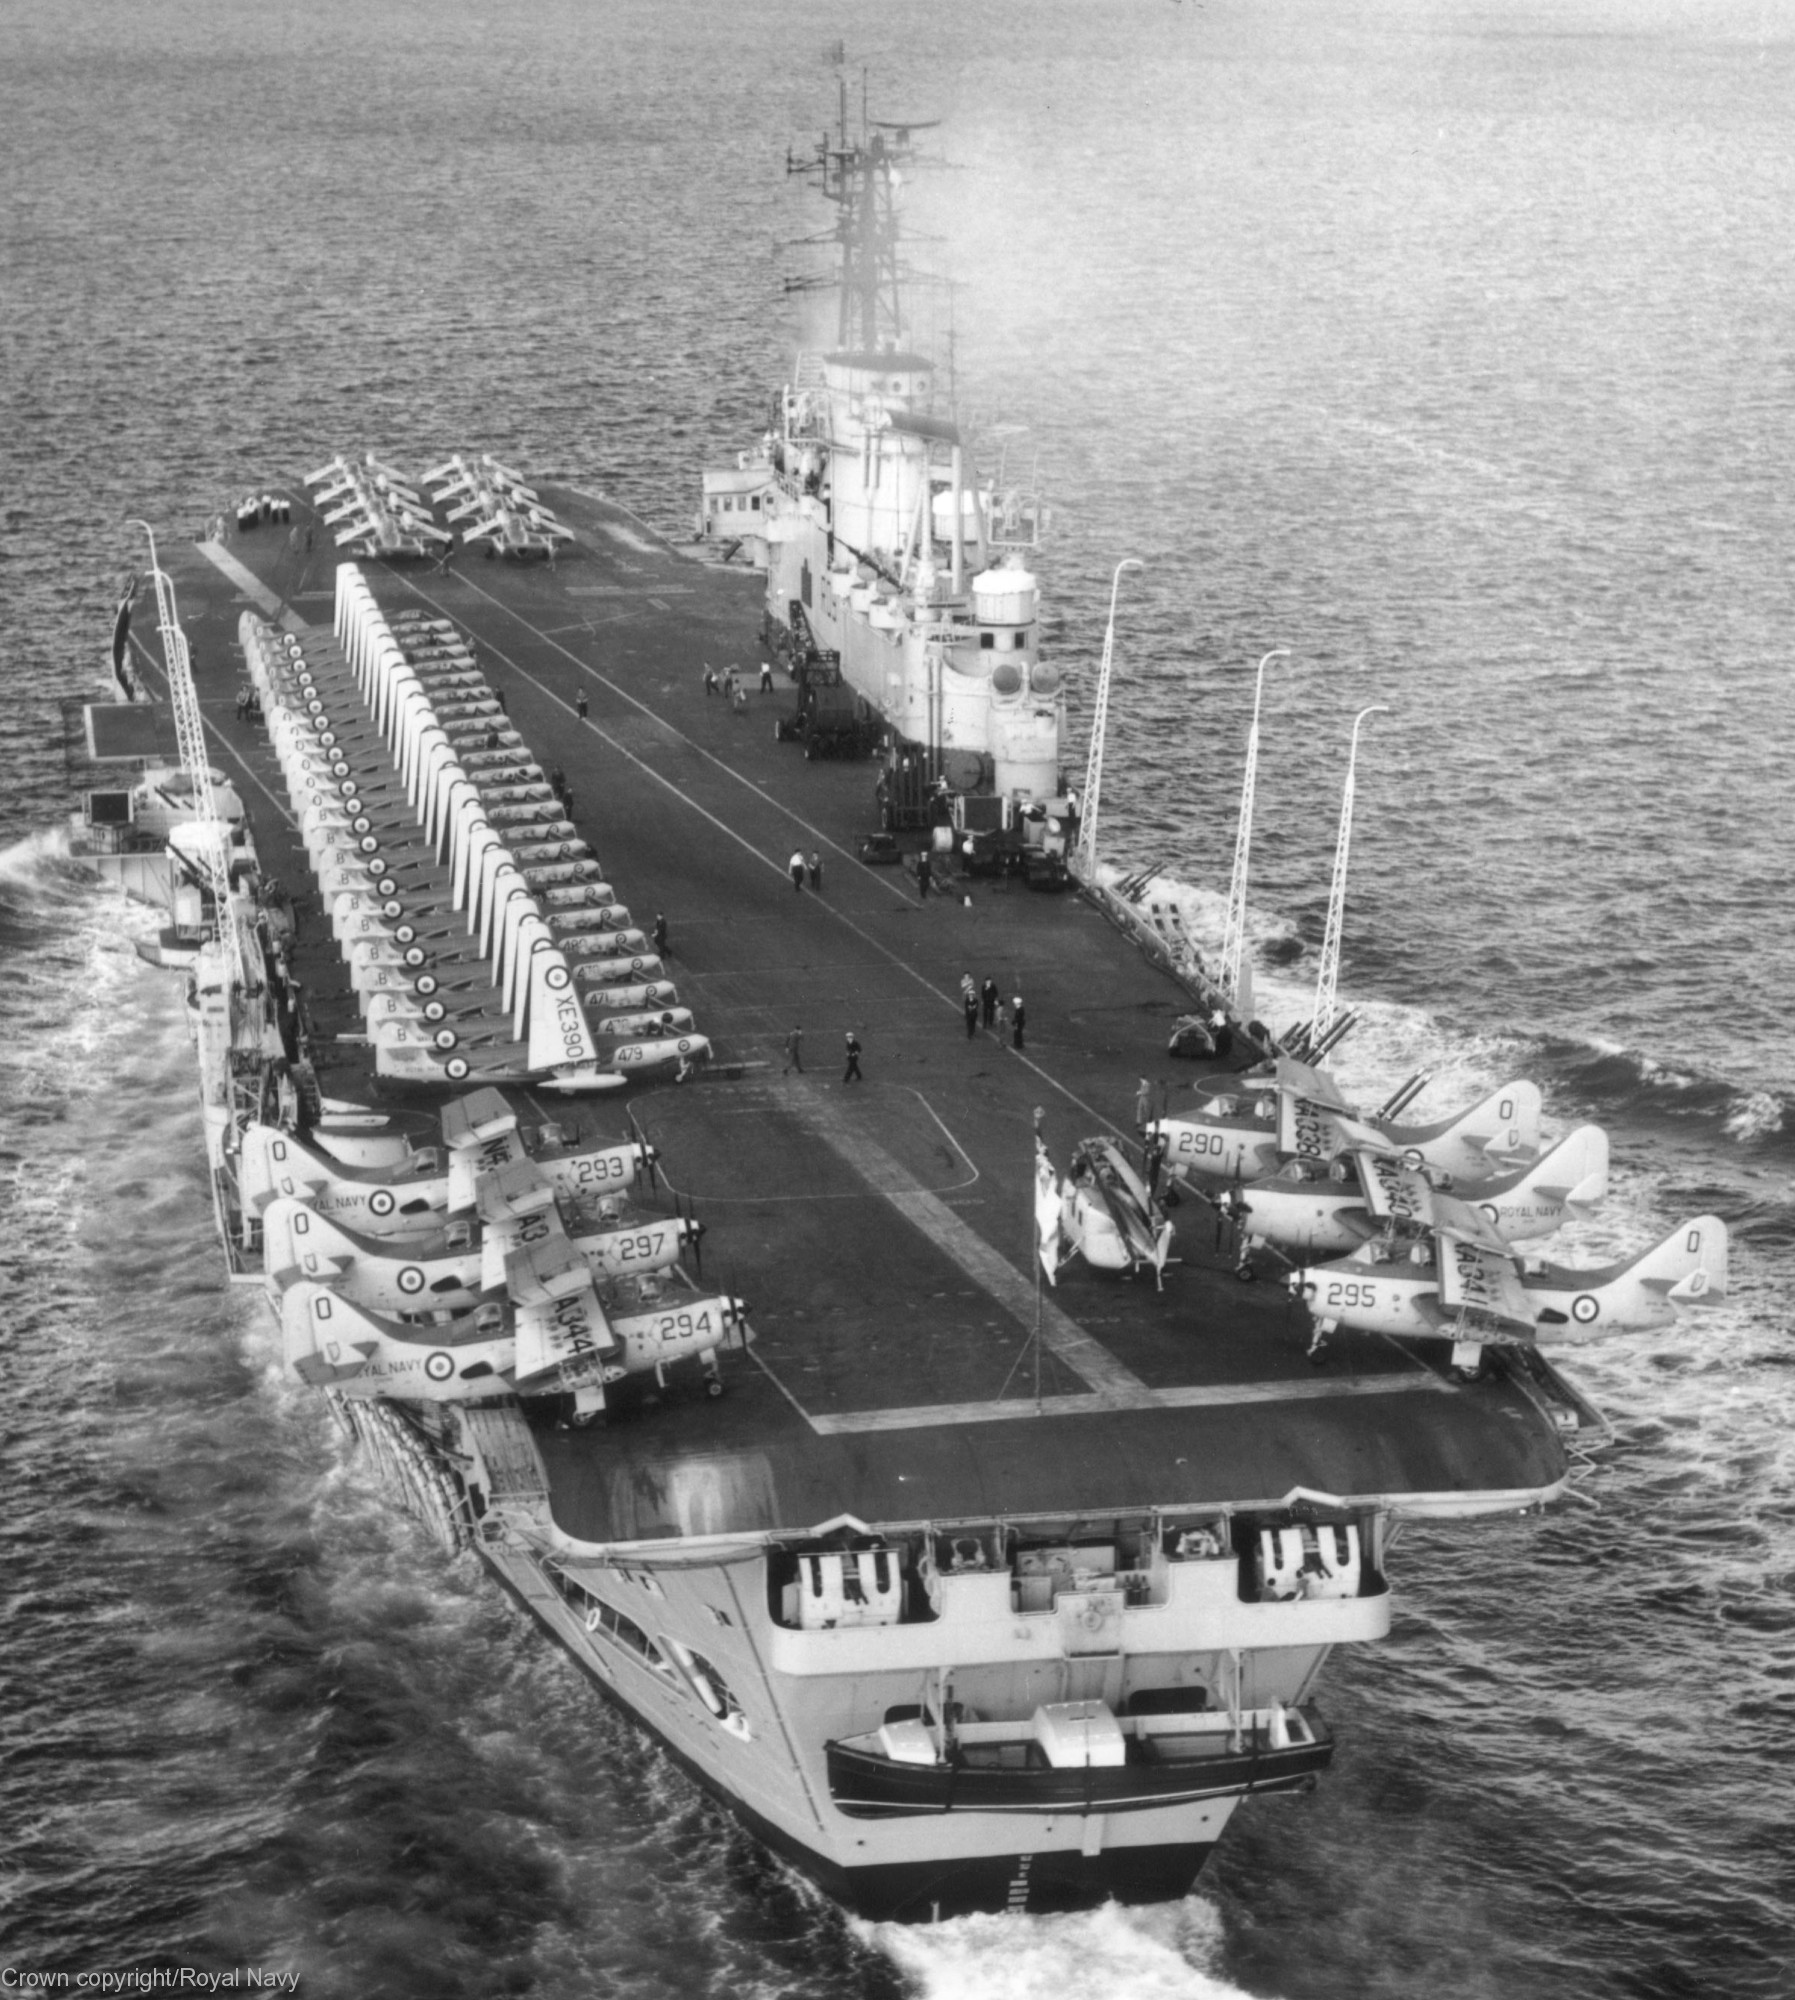 r-09 hms ark royal audacious class aircraft carrier royal navy 02